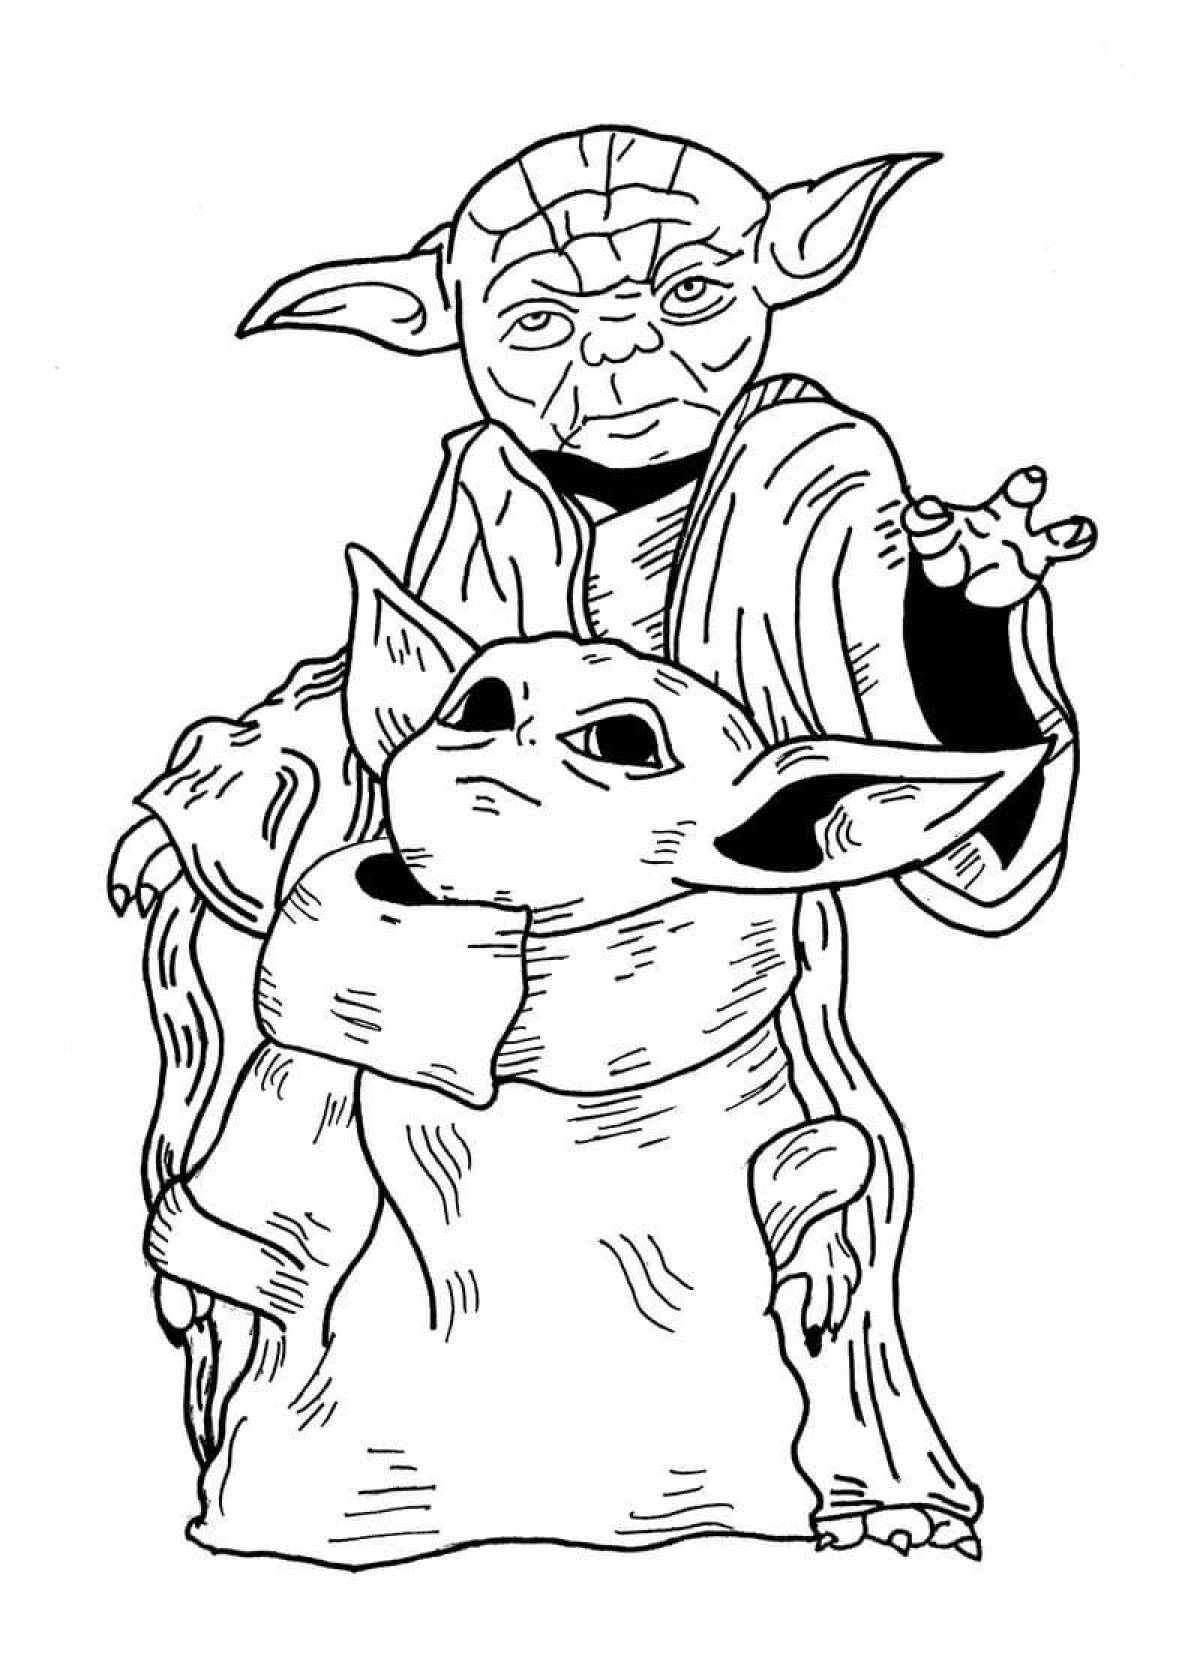 Yoda #2